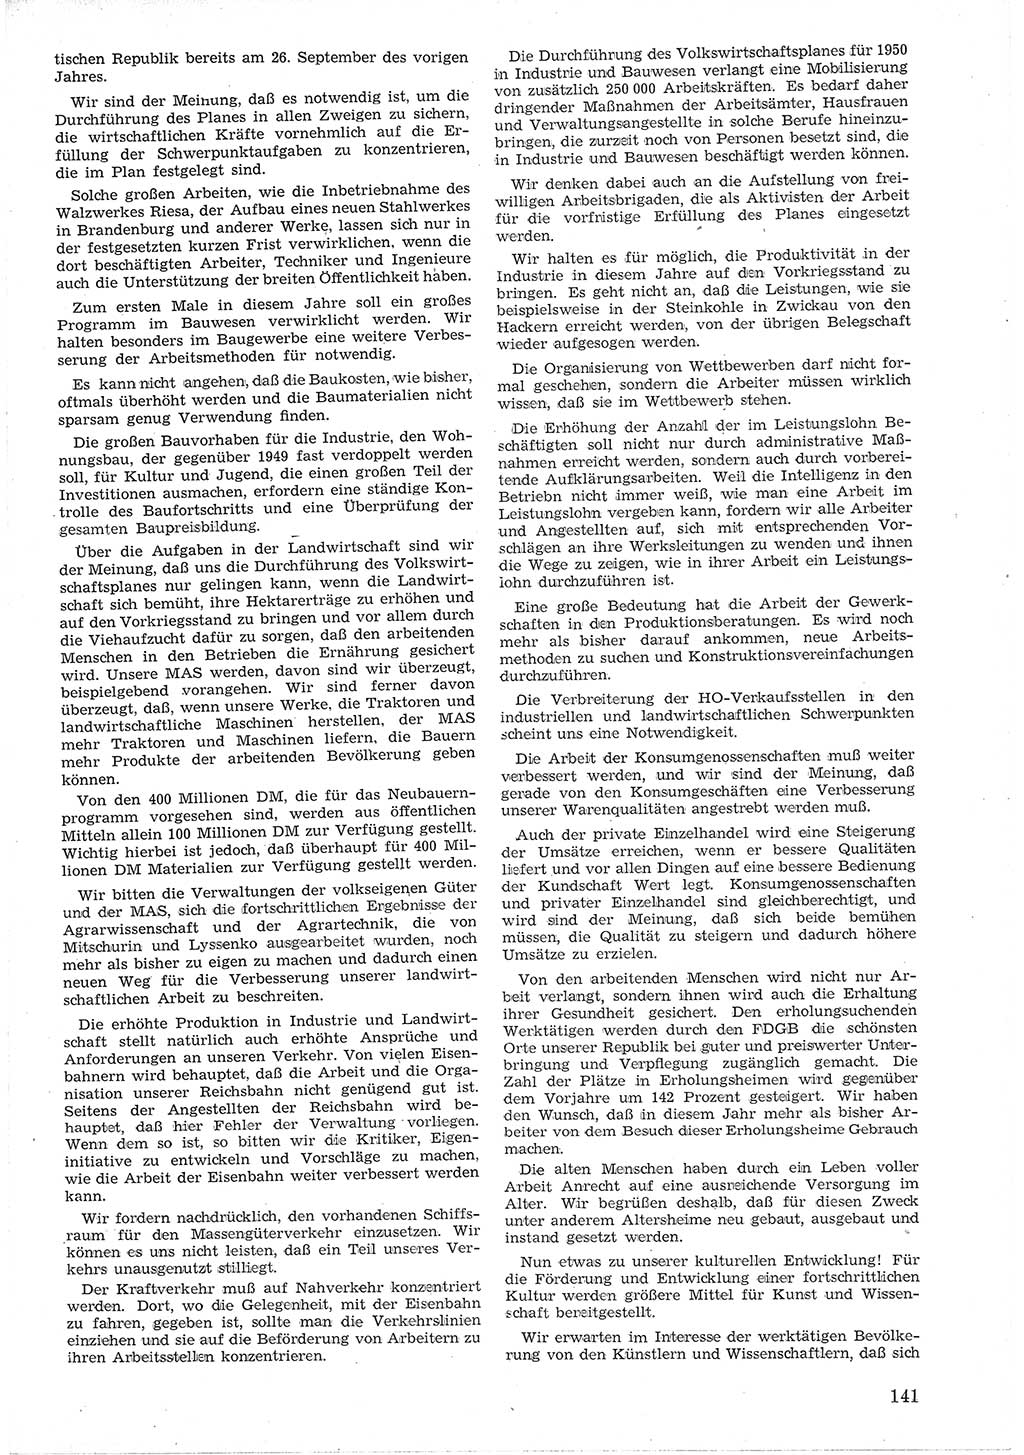 Provisorische Volkskammer (VK) der Deutschen Demokratischen Republik (DDR) 1949-1950, Dokument 153 (Prov. VK DDR 1949-1950, Dok. 153)